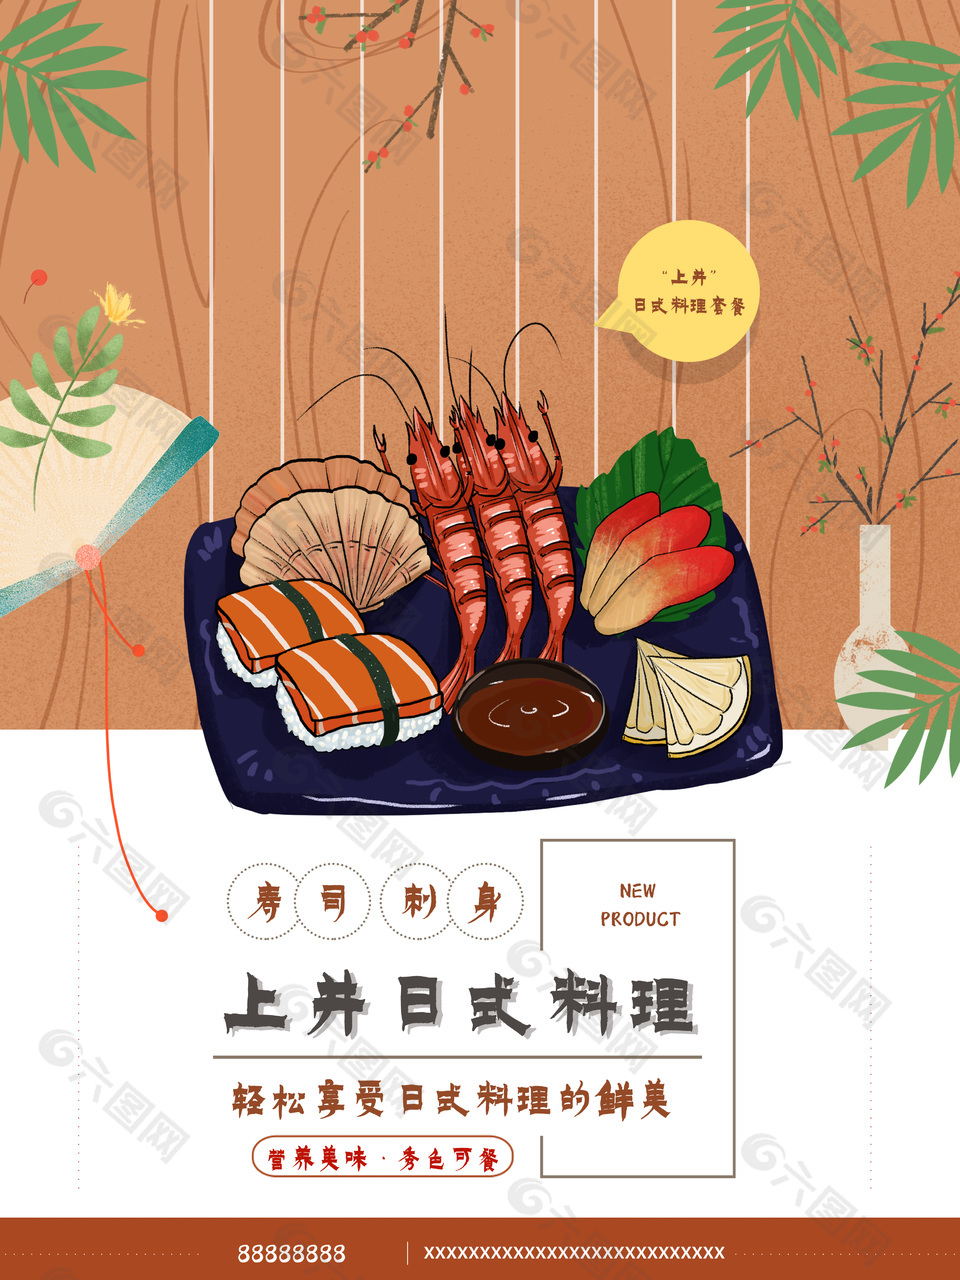 日式海鲜刺身拼盘海报